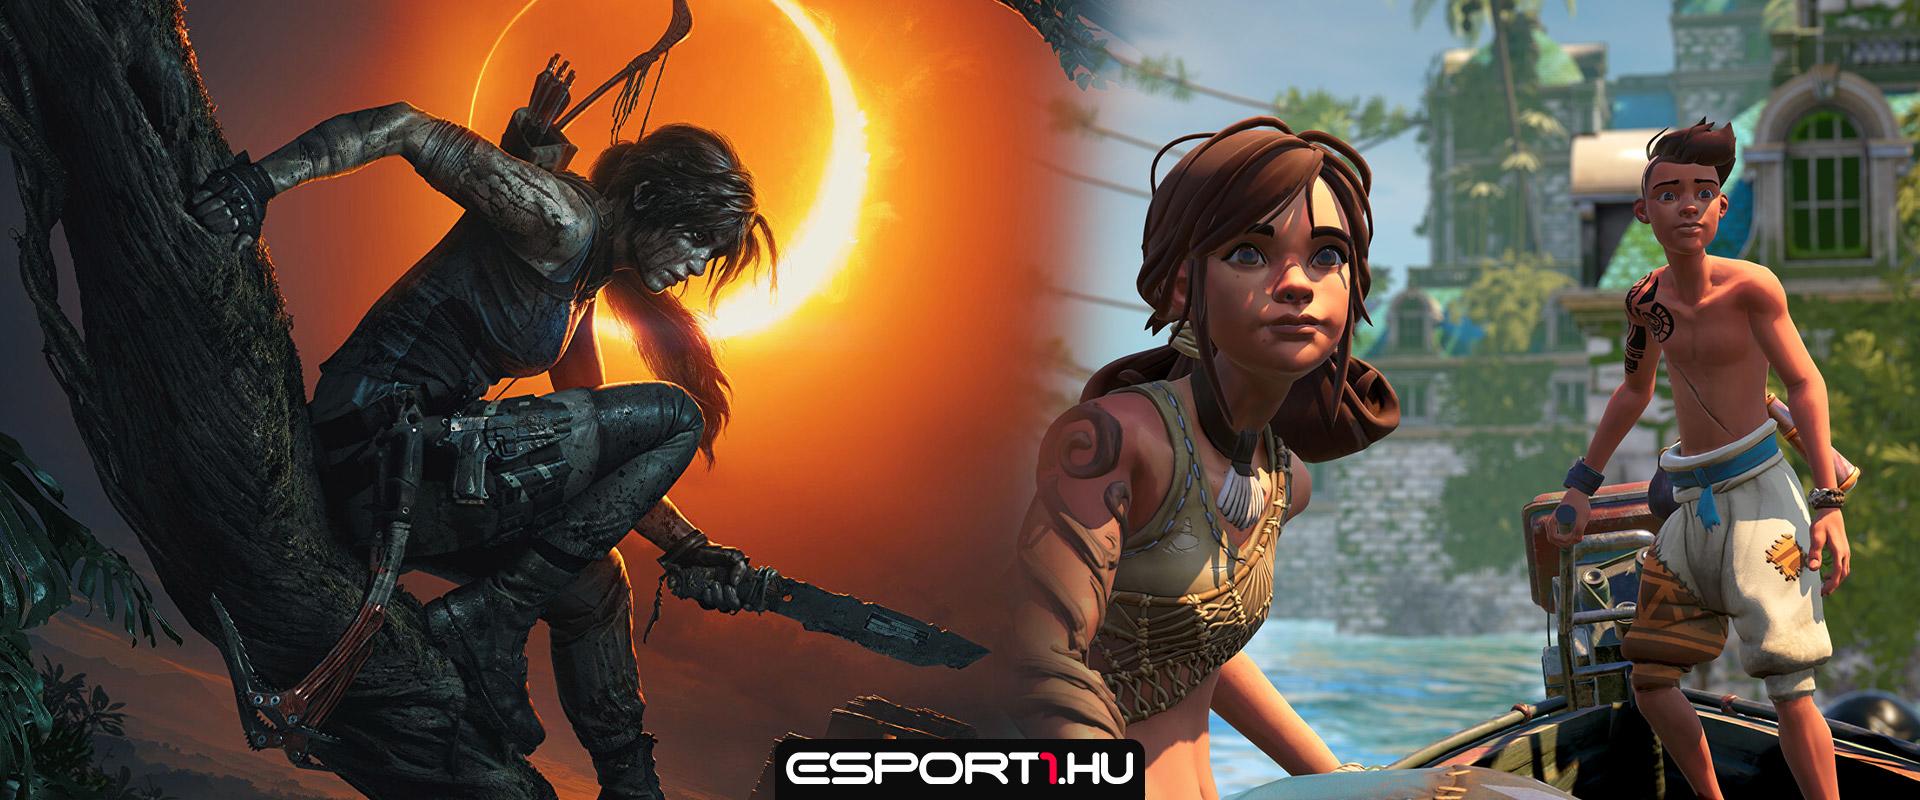 Akciófigyelő: Két ingyenes játék vár Epicen, az egyik a Shadow of the Tomb Raider!